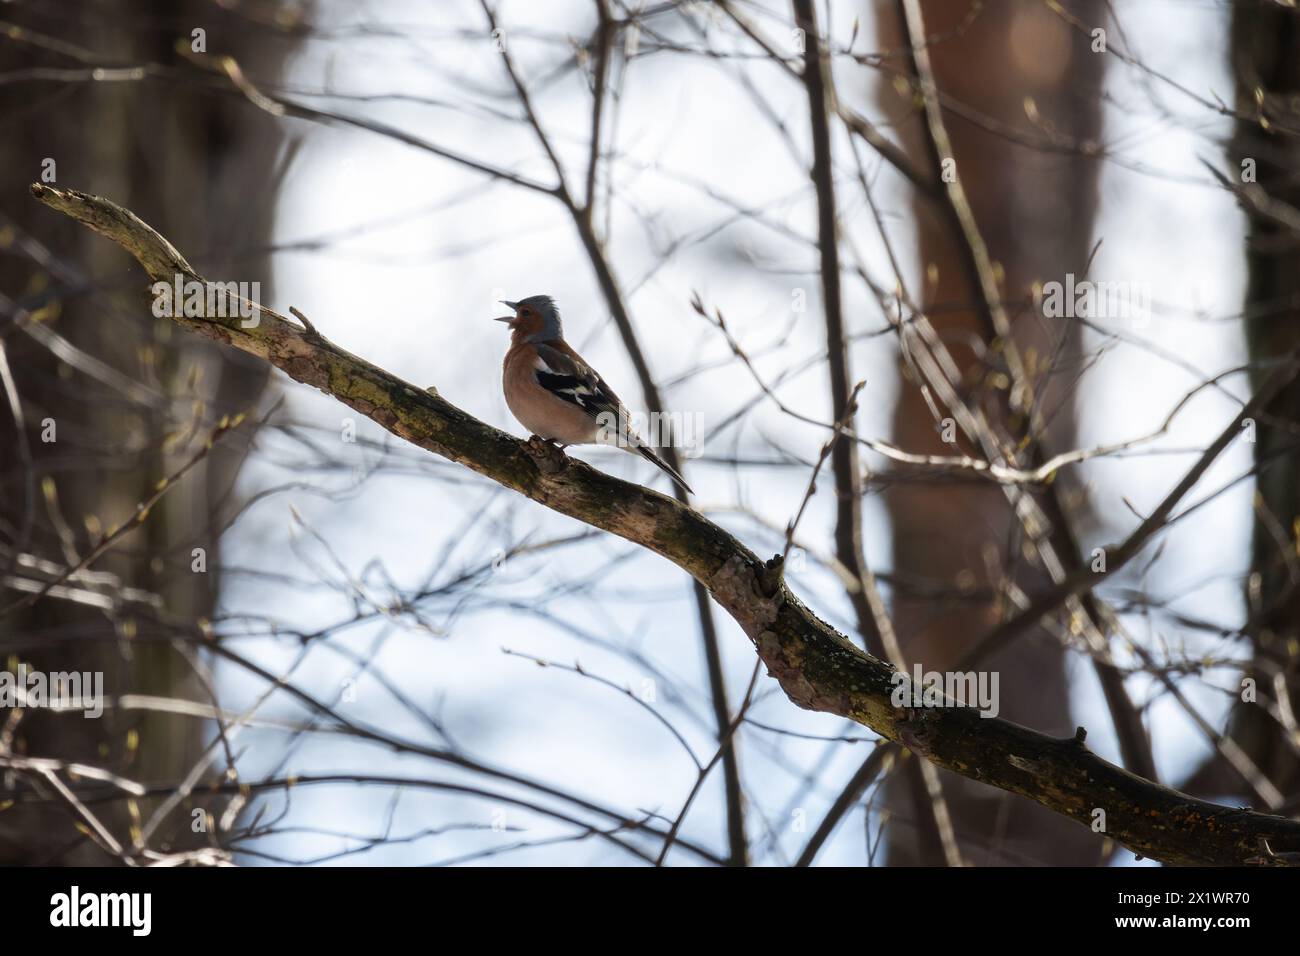 Un uccellino canta sul ramo in una giornata di sole. Lo chaffinch eurasiatico, lo chaffinch comune, o semplicemente lo chaffinch, è un piccolo pas comune e diffuso Foto Stock